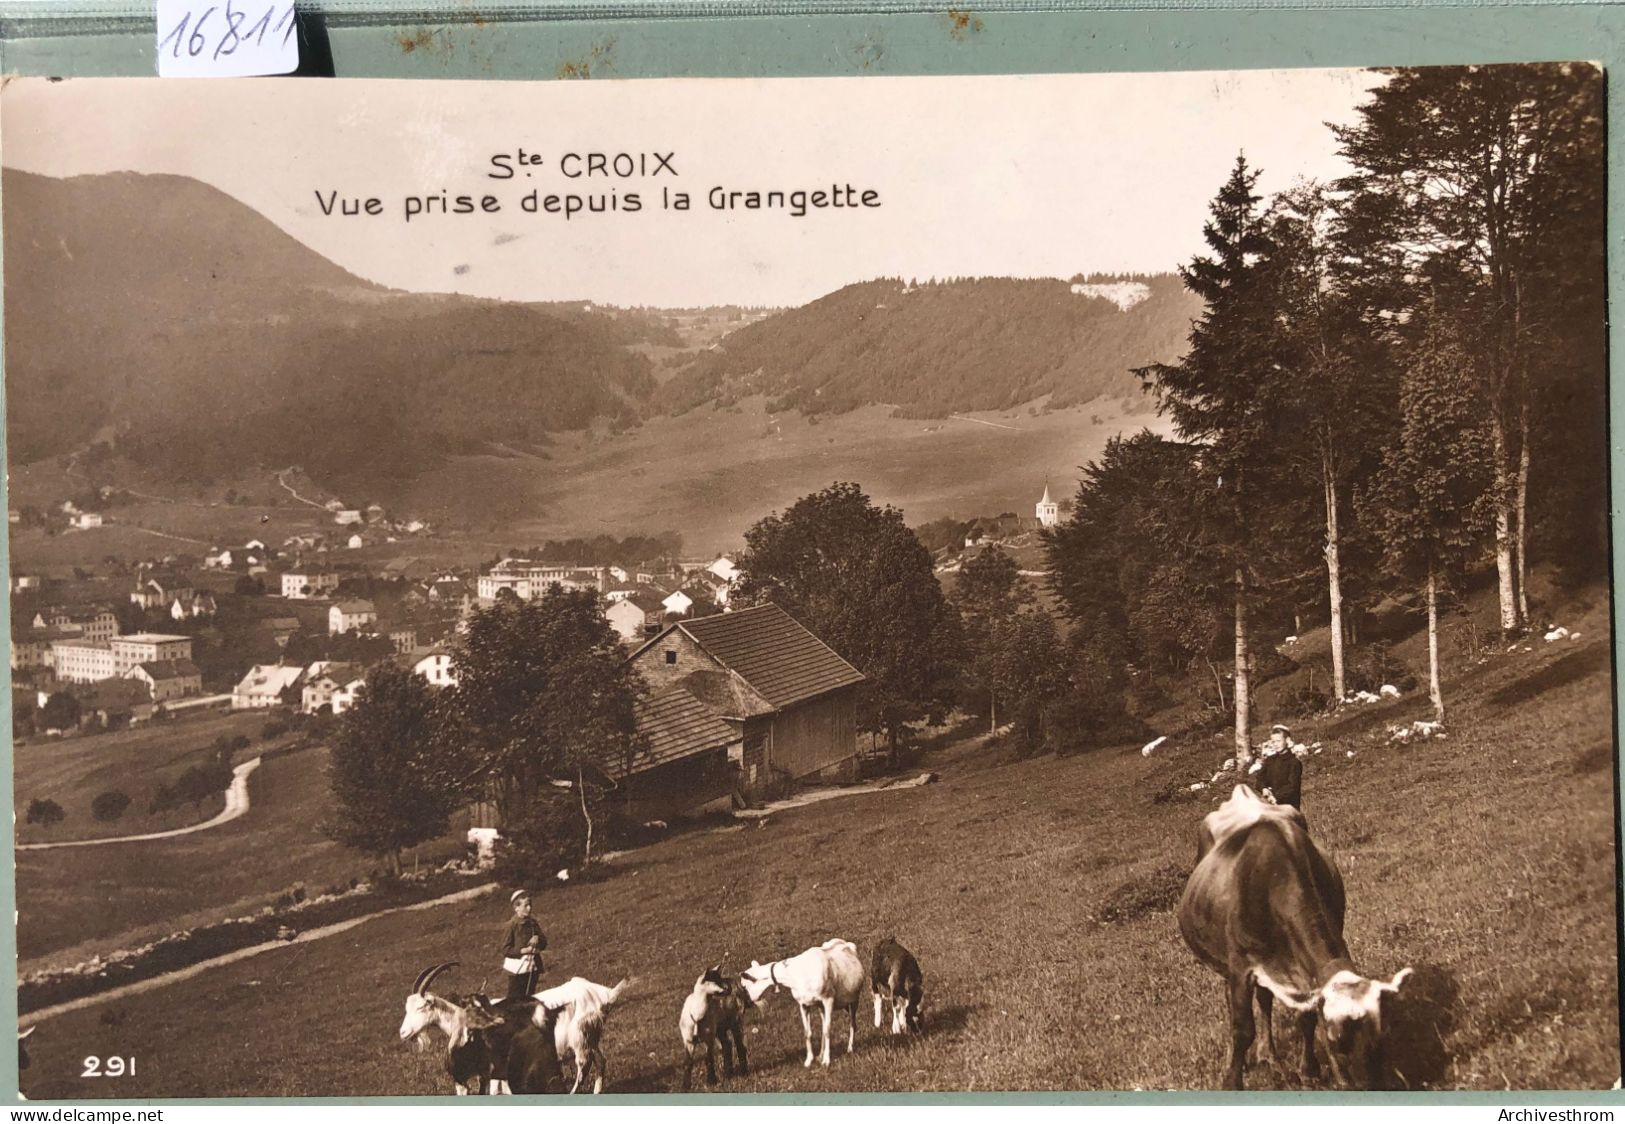 Ste-Croix (Vaud) - Vue Prise Depuis La Grangette - Vache, Bouc, Chèvres Et Jeunes Gardiens (16'811) - Yverdon-les-Bains 